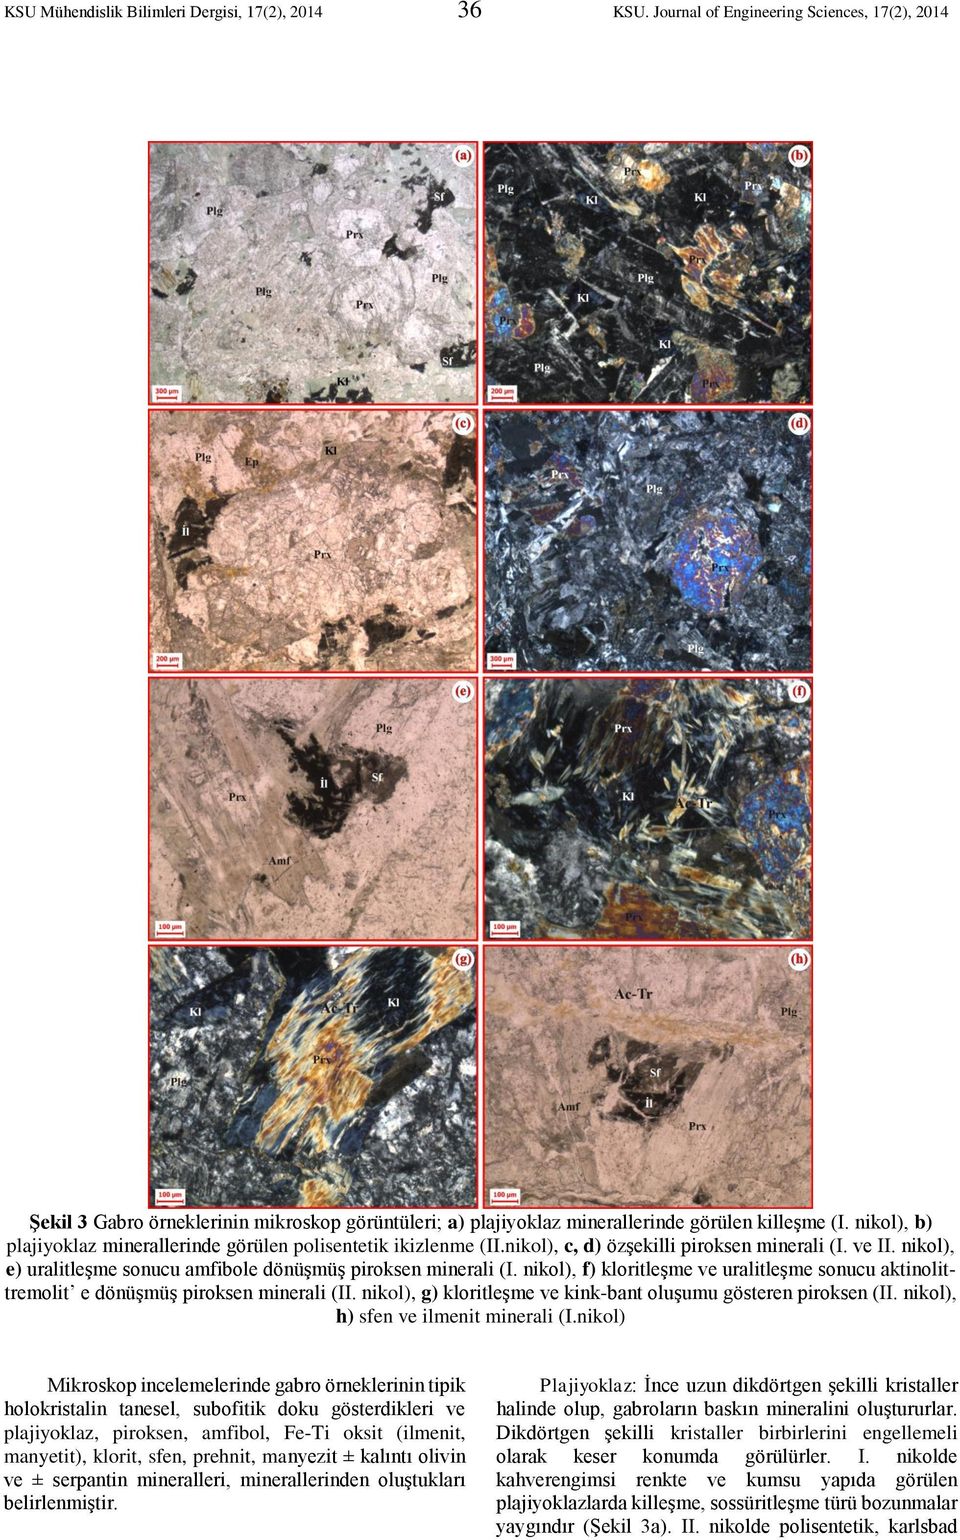 nikol), f) kloritleşme ve uralitleşme sonucu aktinolittremolit e dönüşmüş piroksen minerali (II. nikol), g) kloritleşme ve kink-bant oluşumu gösteren piroksen (II.